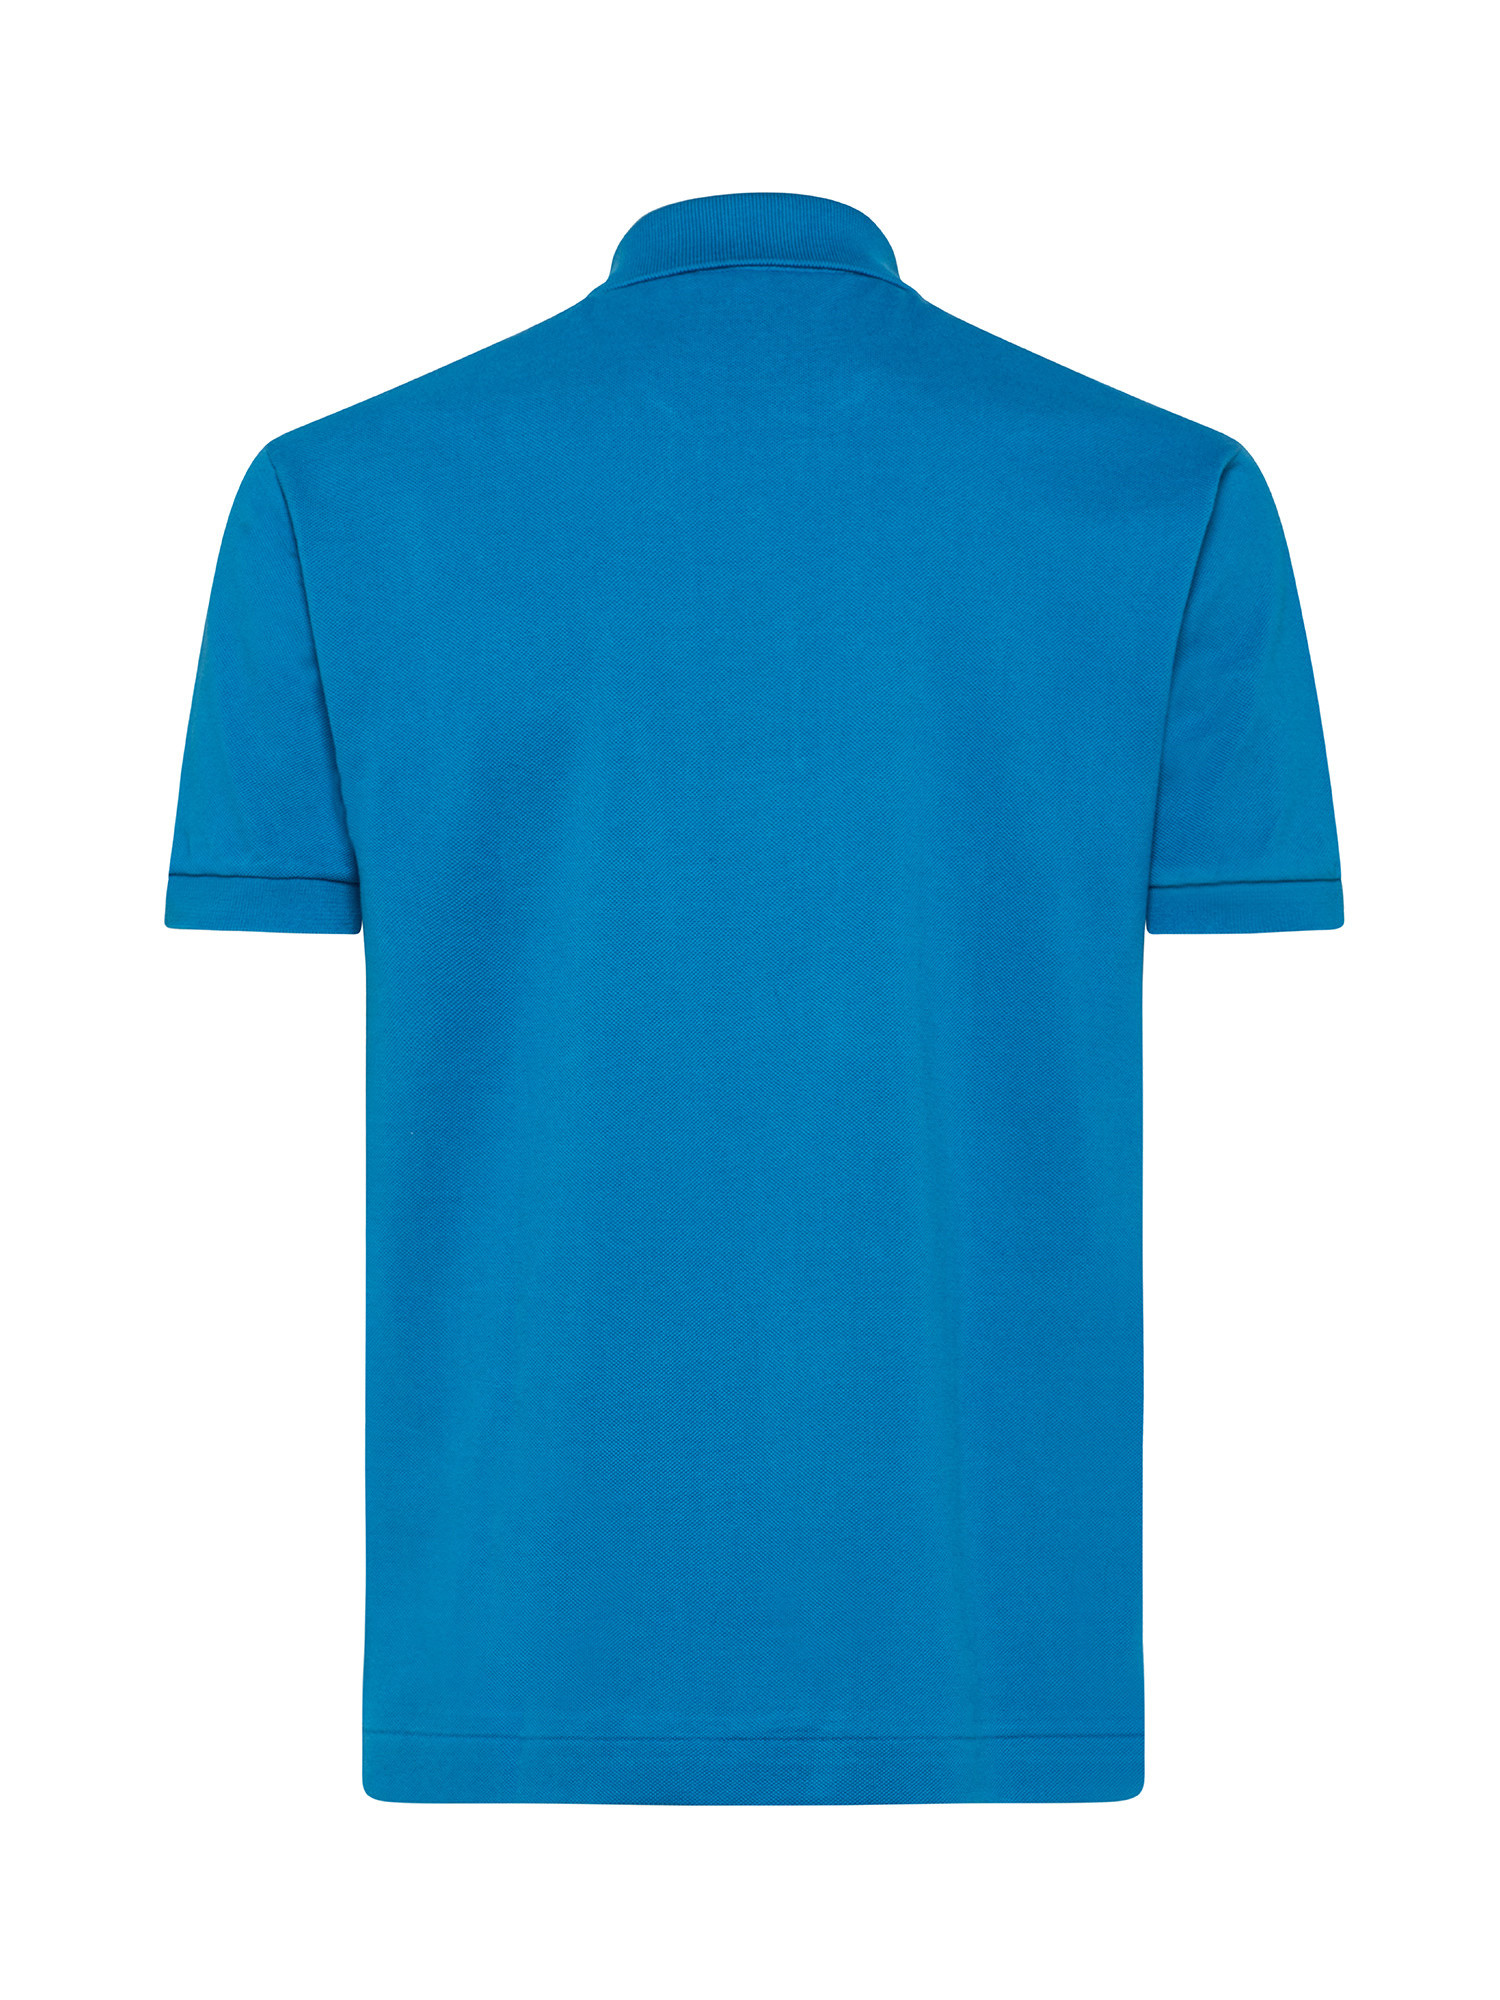 Lacoste - Classic cut petit piquà© polo shirt, Light Blue, large image number 1